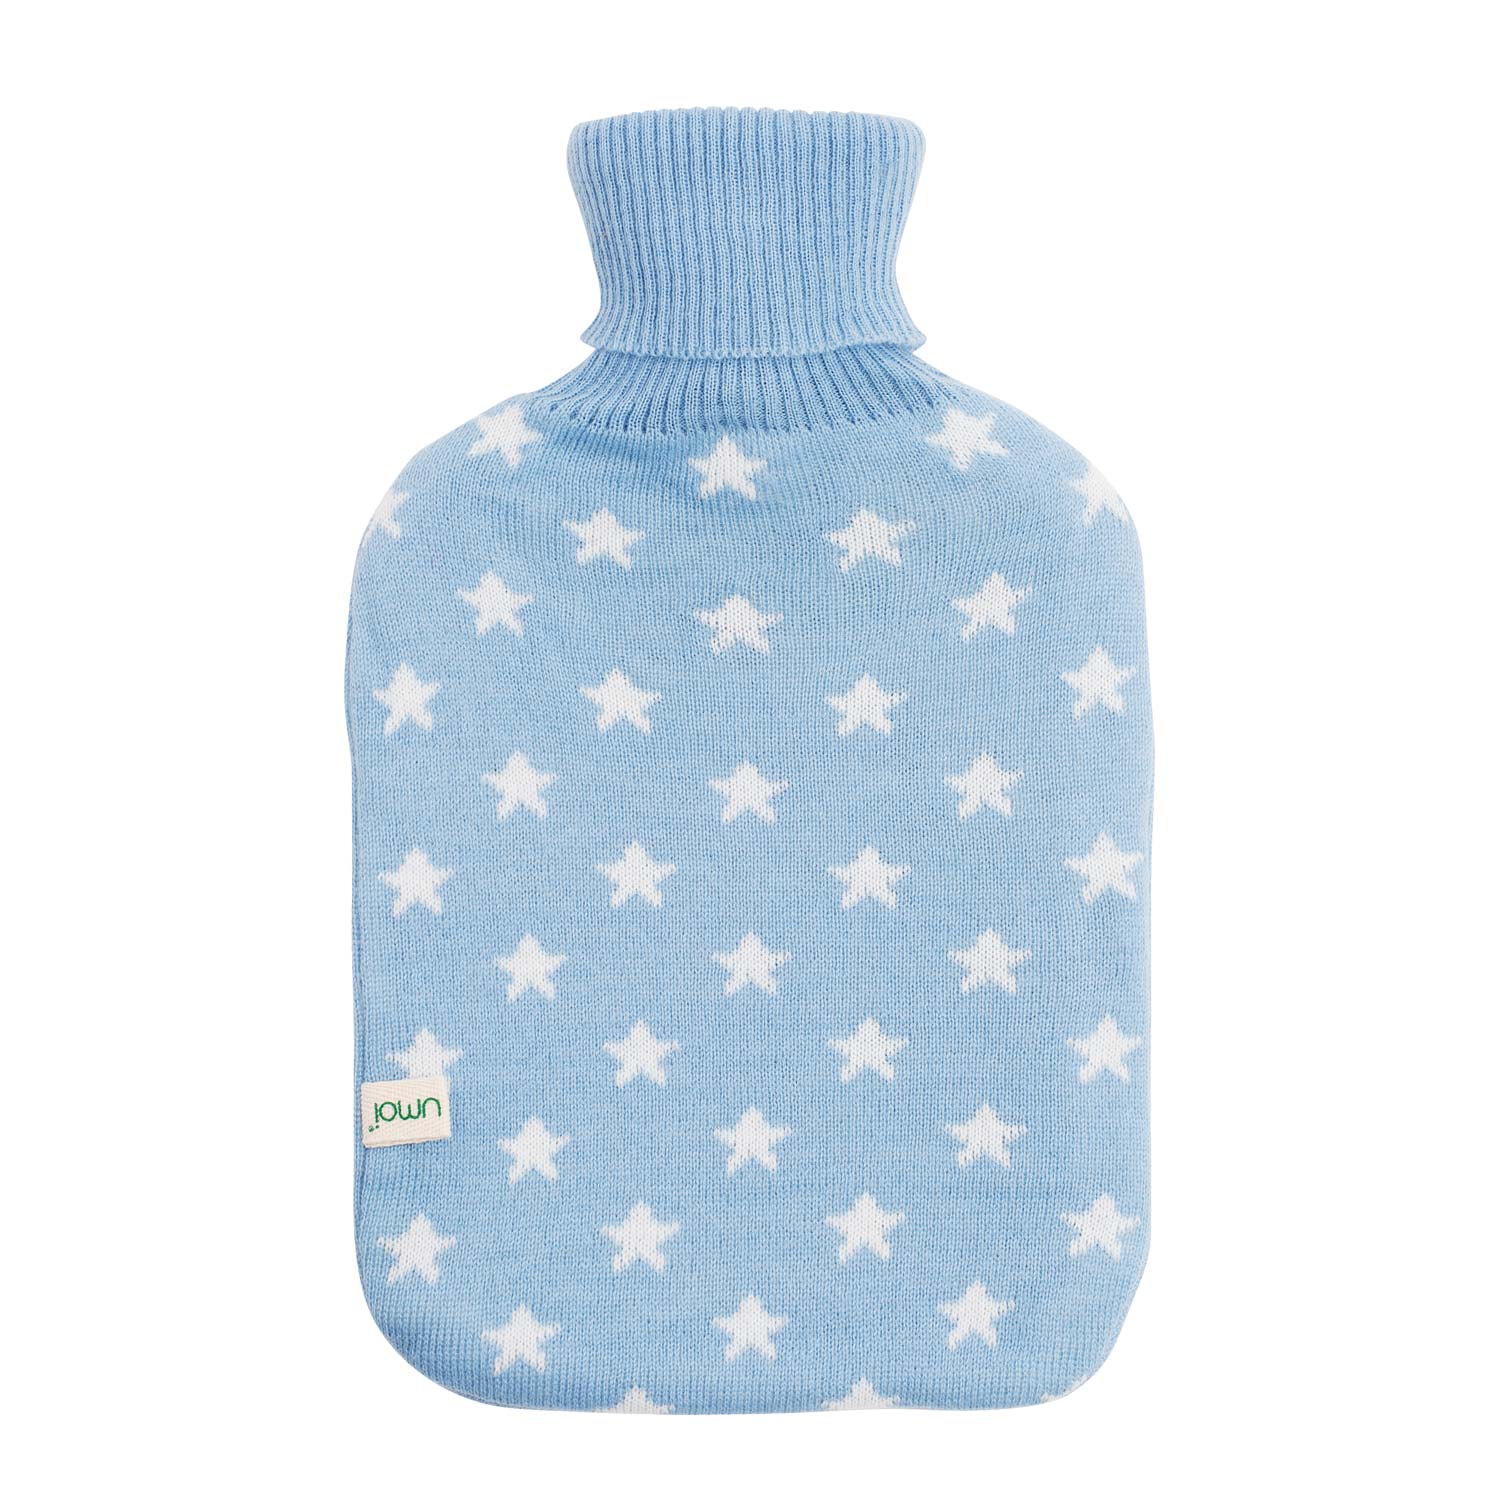 UMOI Premium Naturgummi Wärmflasche 1.8 Liter Strickbezug mit Sternen